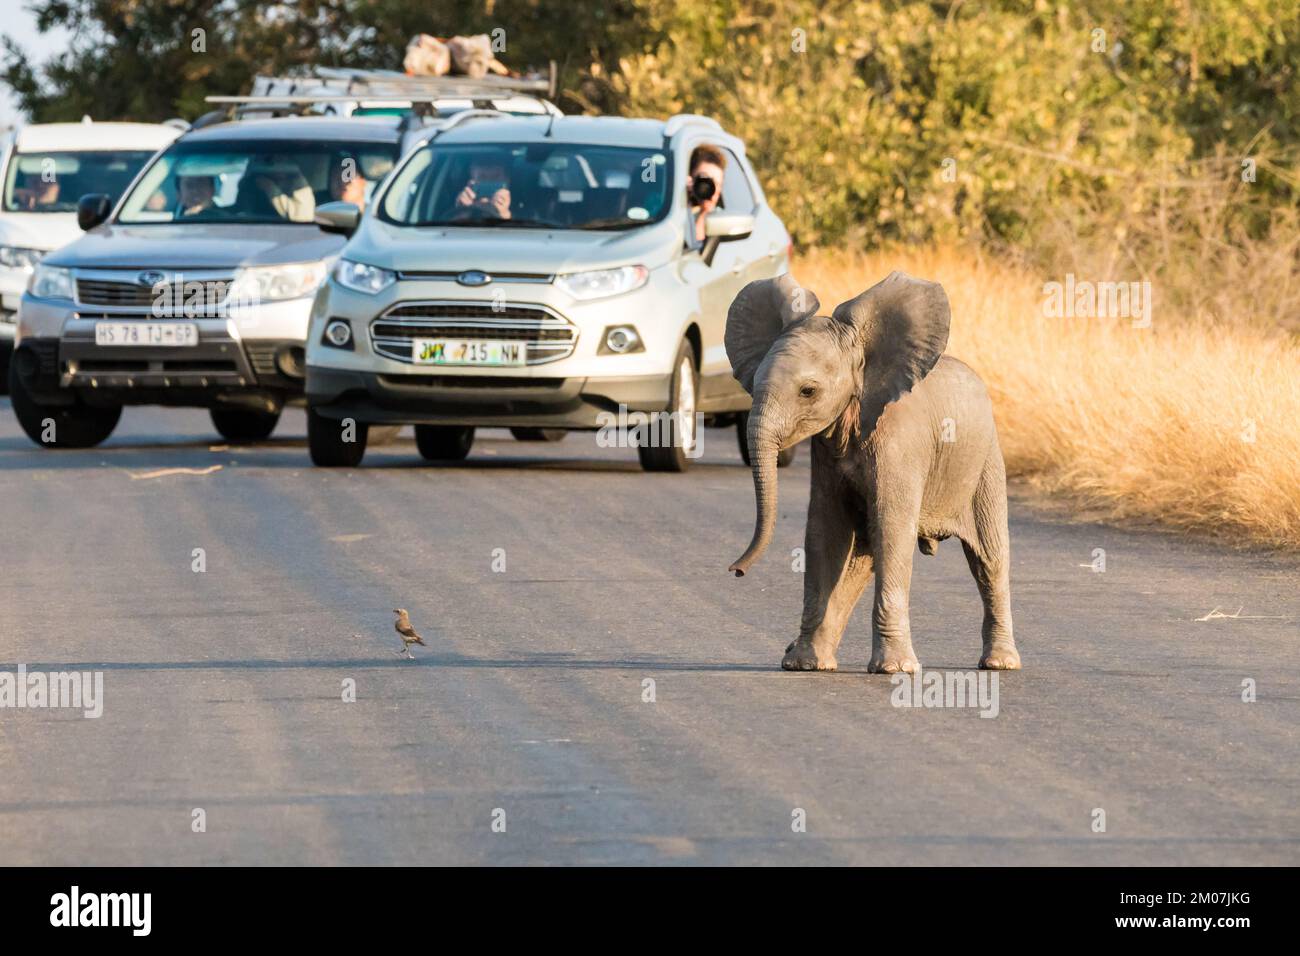 Bebé elefante africano (Loxodonta africana) jugando con un pájaro en la naturaleza mientras los turistas, los fotógrafos en los coches toman fotos de la diversión y los juegos Foto de stock